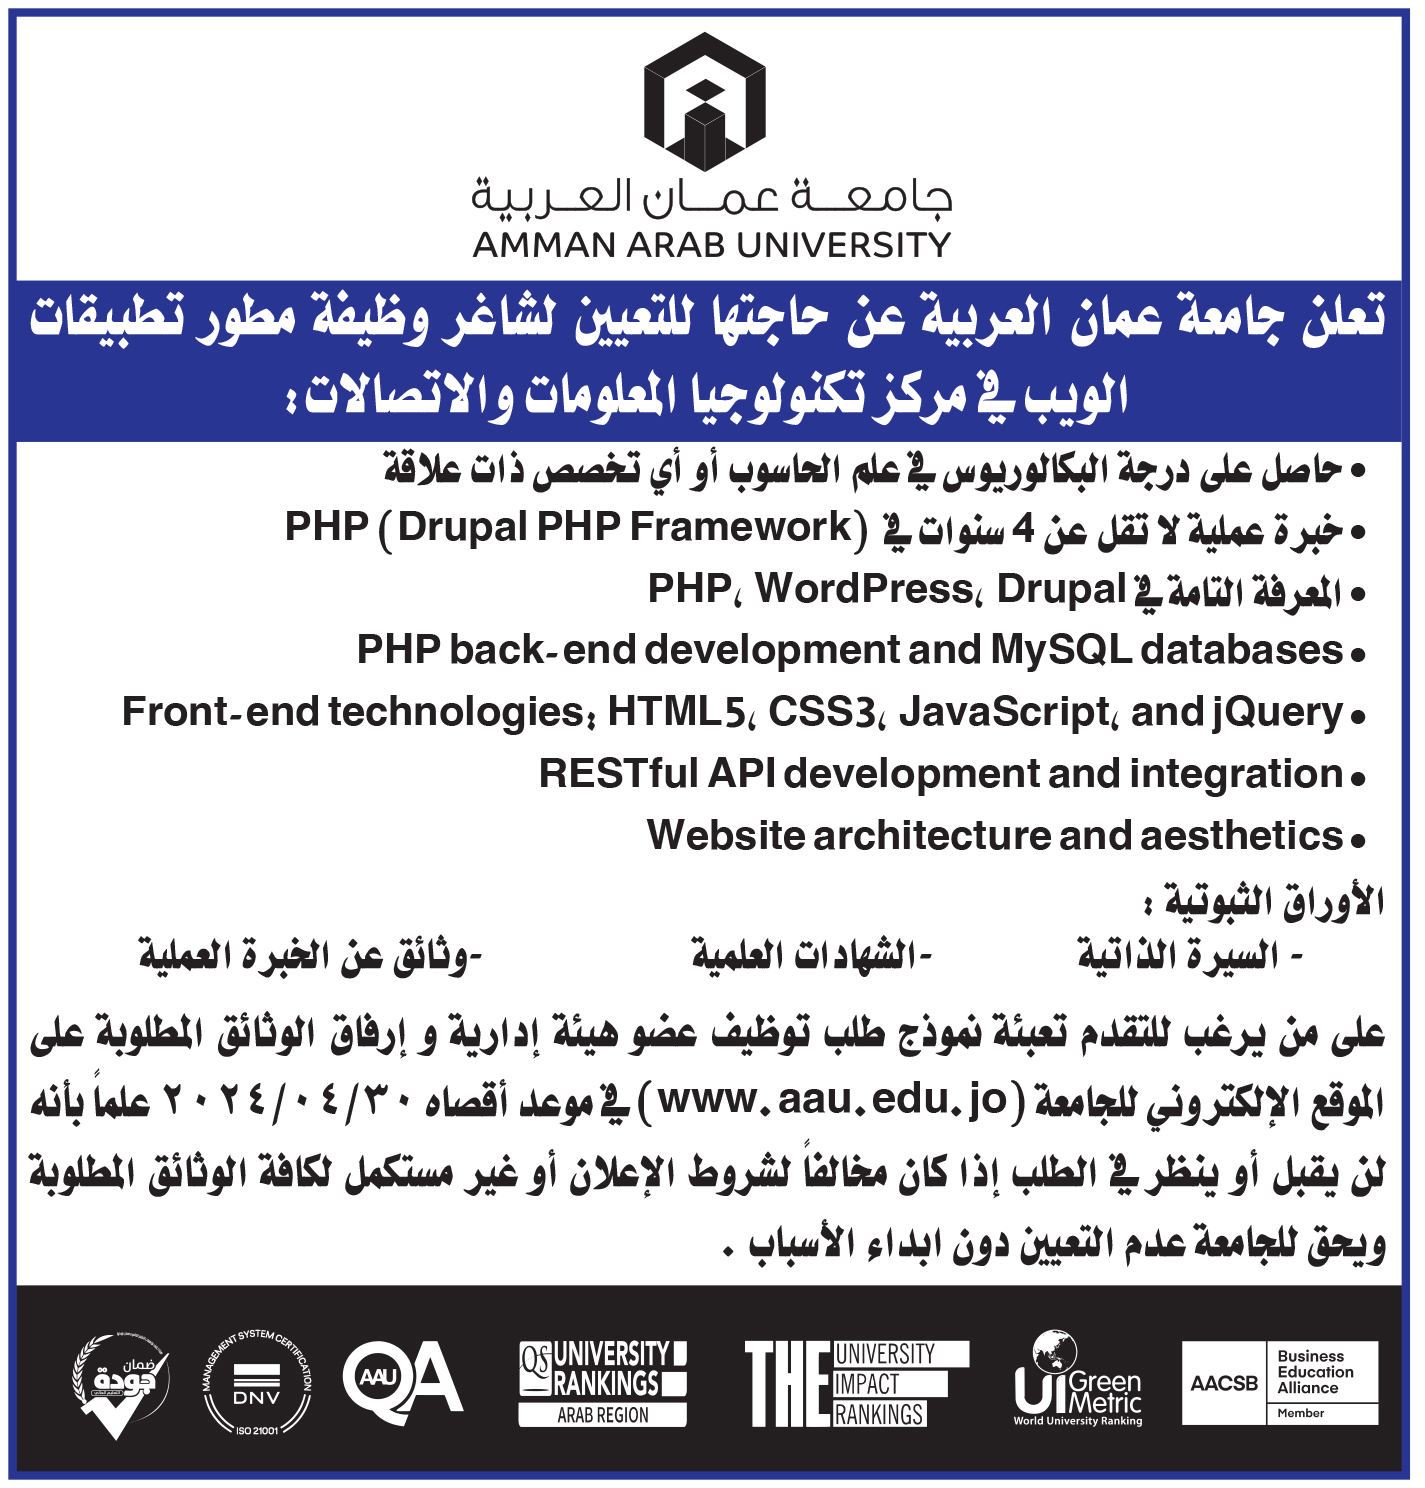 تعلن جامعة عمان العربية عن حاجتها لتعيين شاغر وظيفة مطور تطبيقات الويب في مركز تكنولوجيا المعلومات والاتصالات